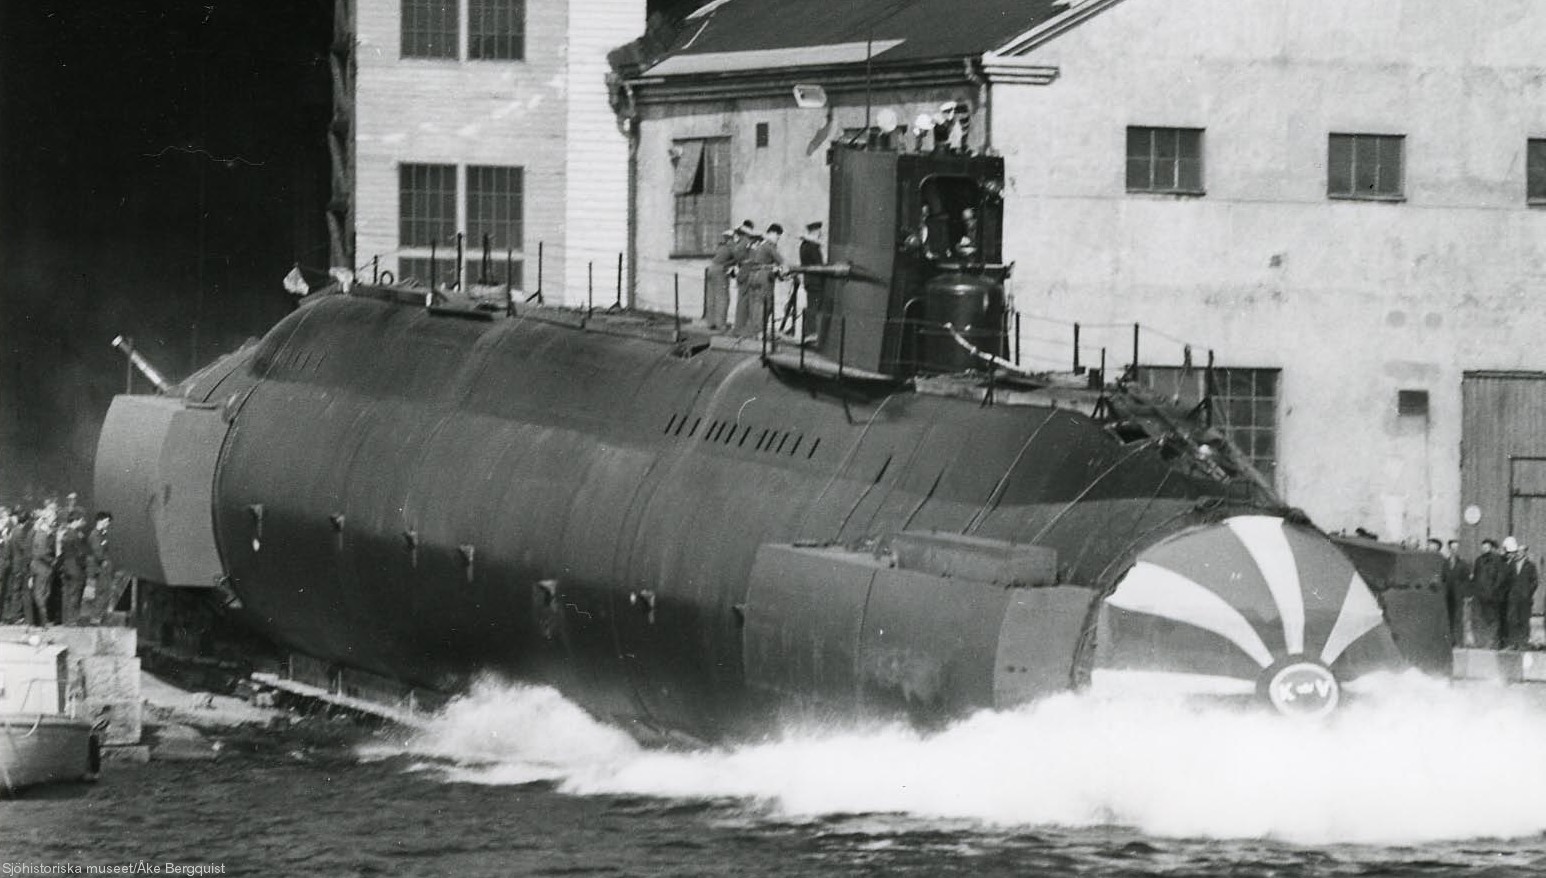 hswms hms sjöhästen shä sjöormen a11 class submarine ssk swedish navy svenska marinen försvarsmakten 08